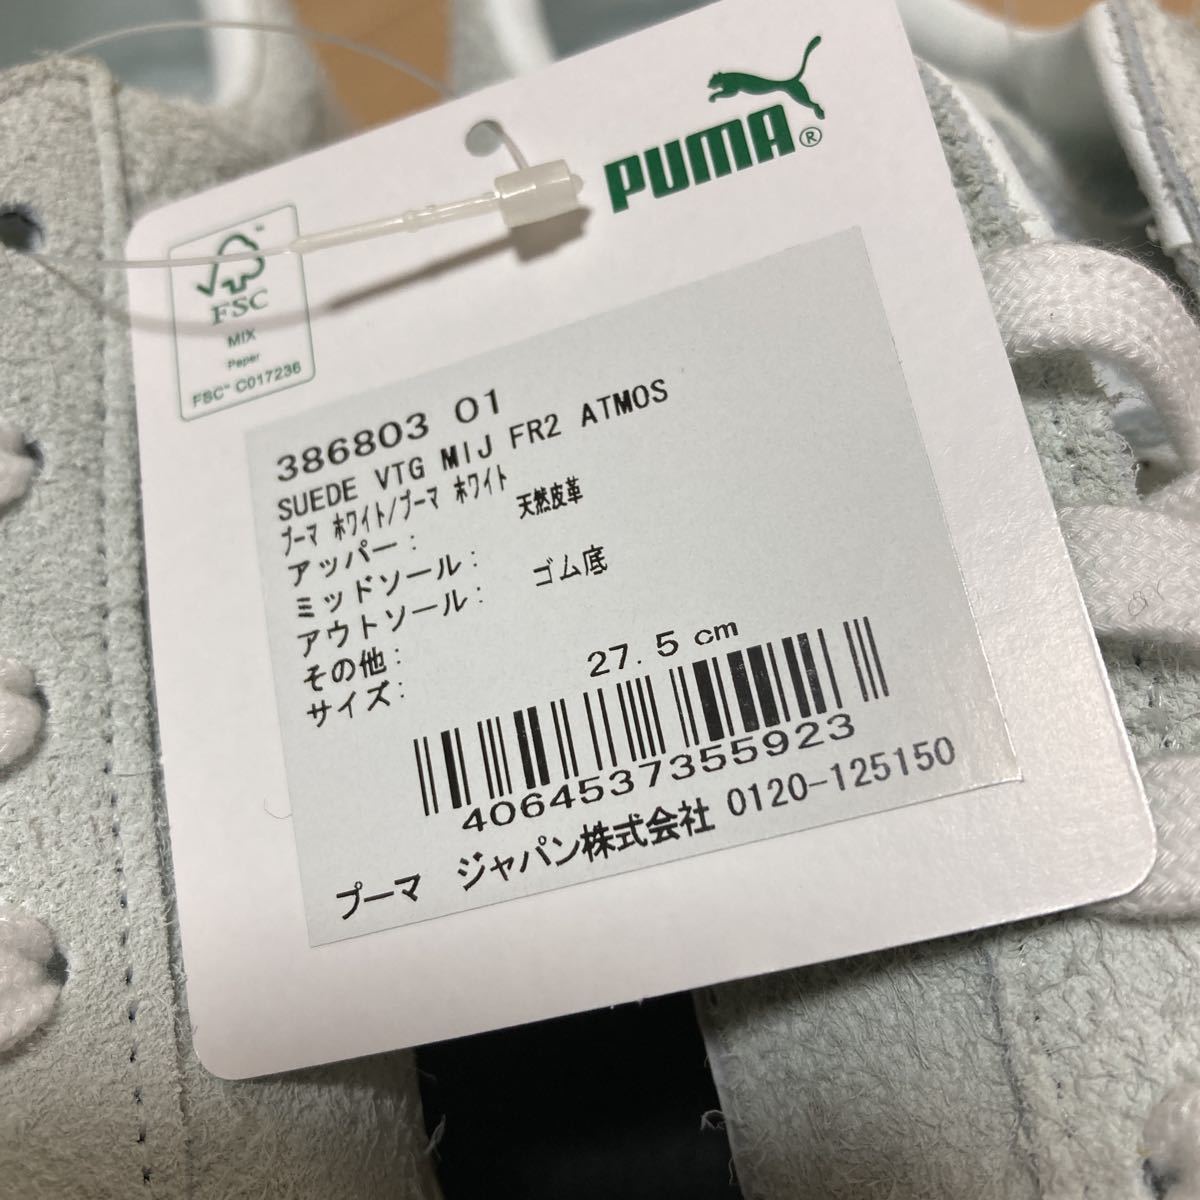 【未使用】PUMA SUEDE プーマ スウェード VTG MIJ FR2 ATMOS ホワイト 27.5cm 日本製 386803 01_画像10